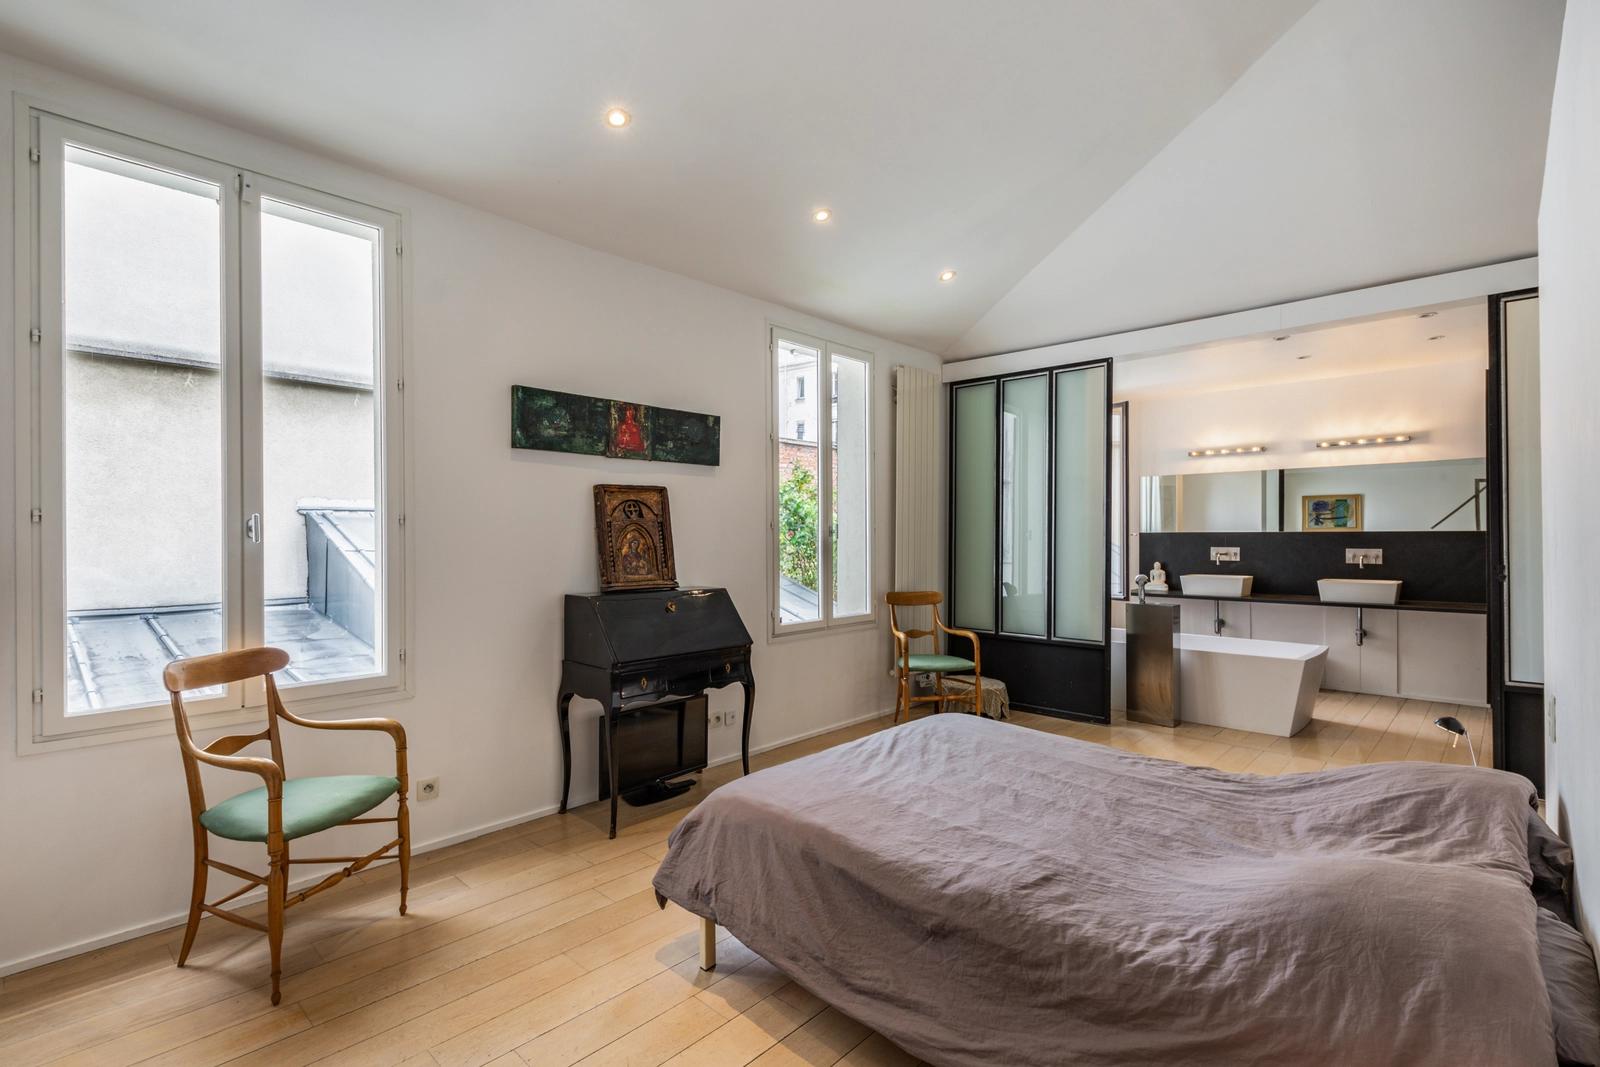 Dormitorio dentro Una casa con terraza diseñada por un arquitecto en París - 1